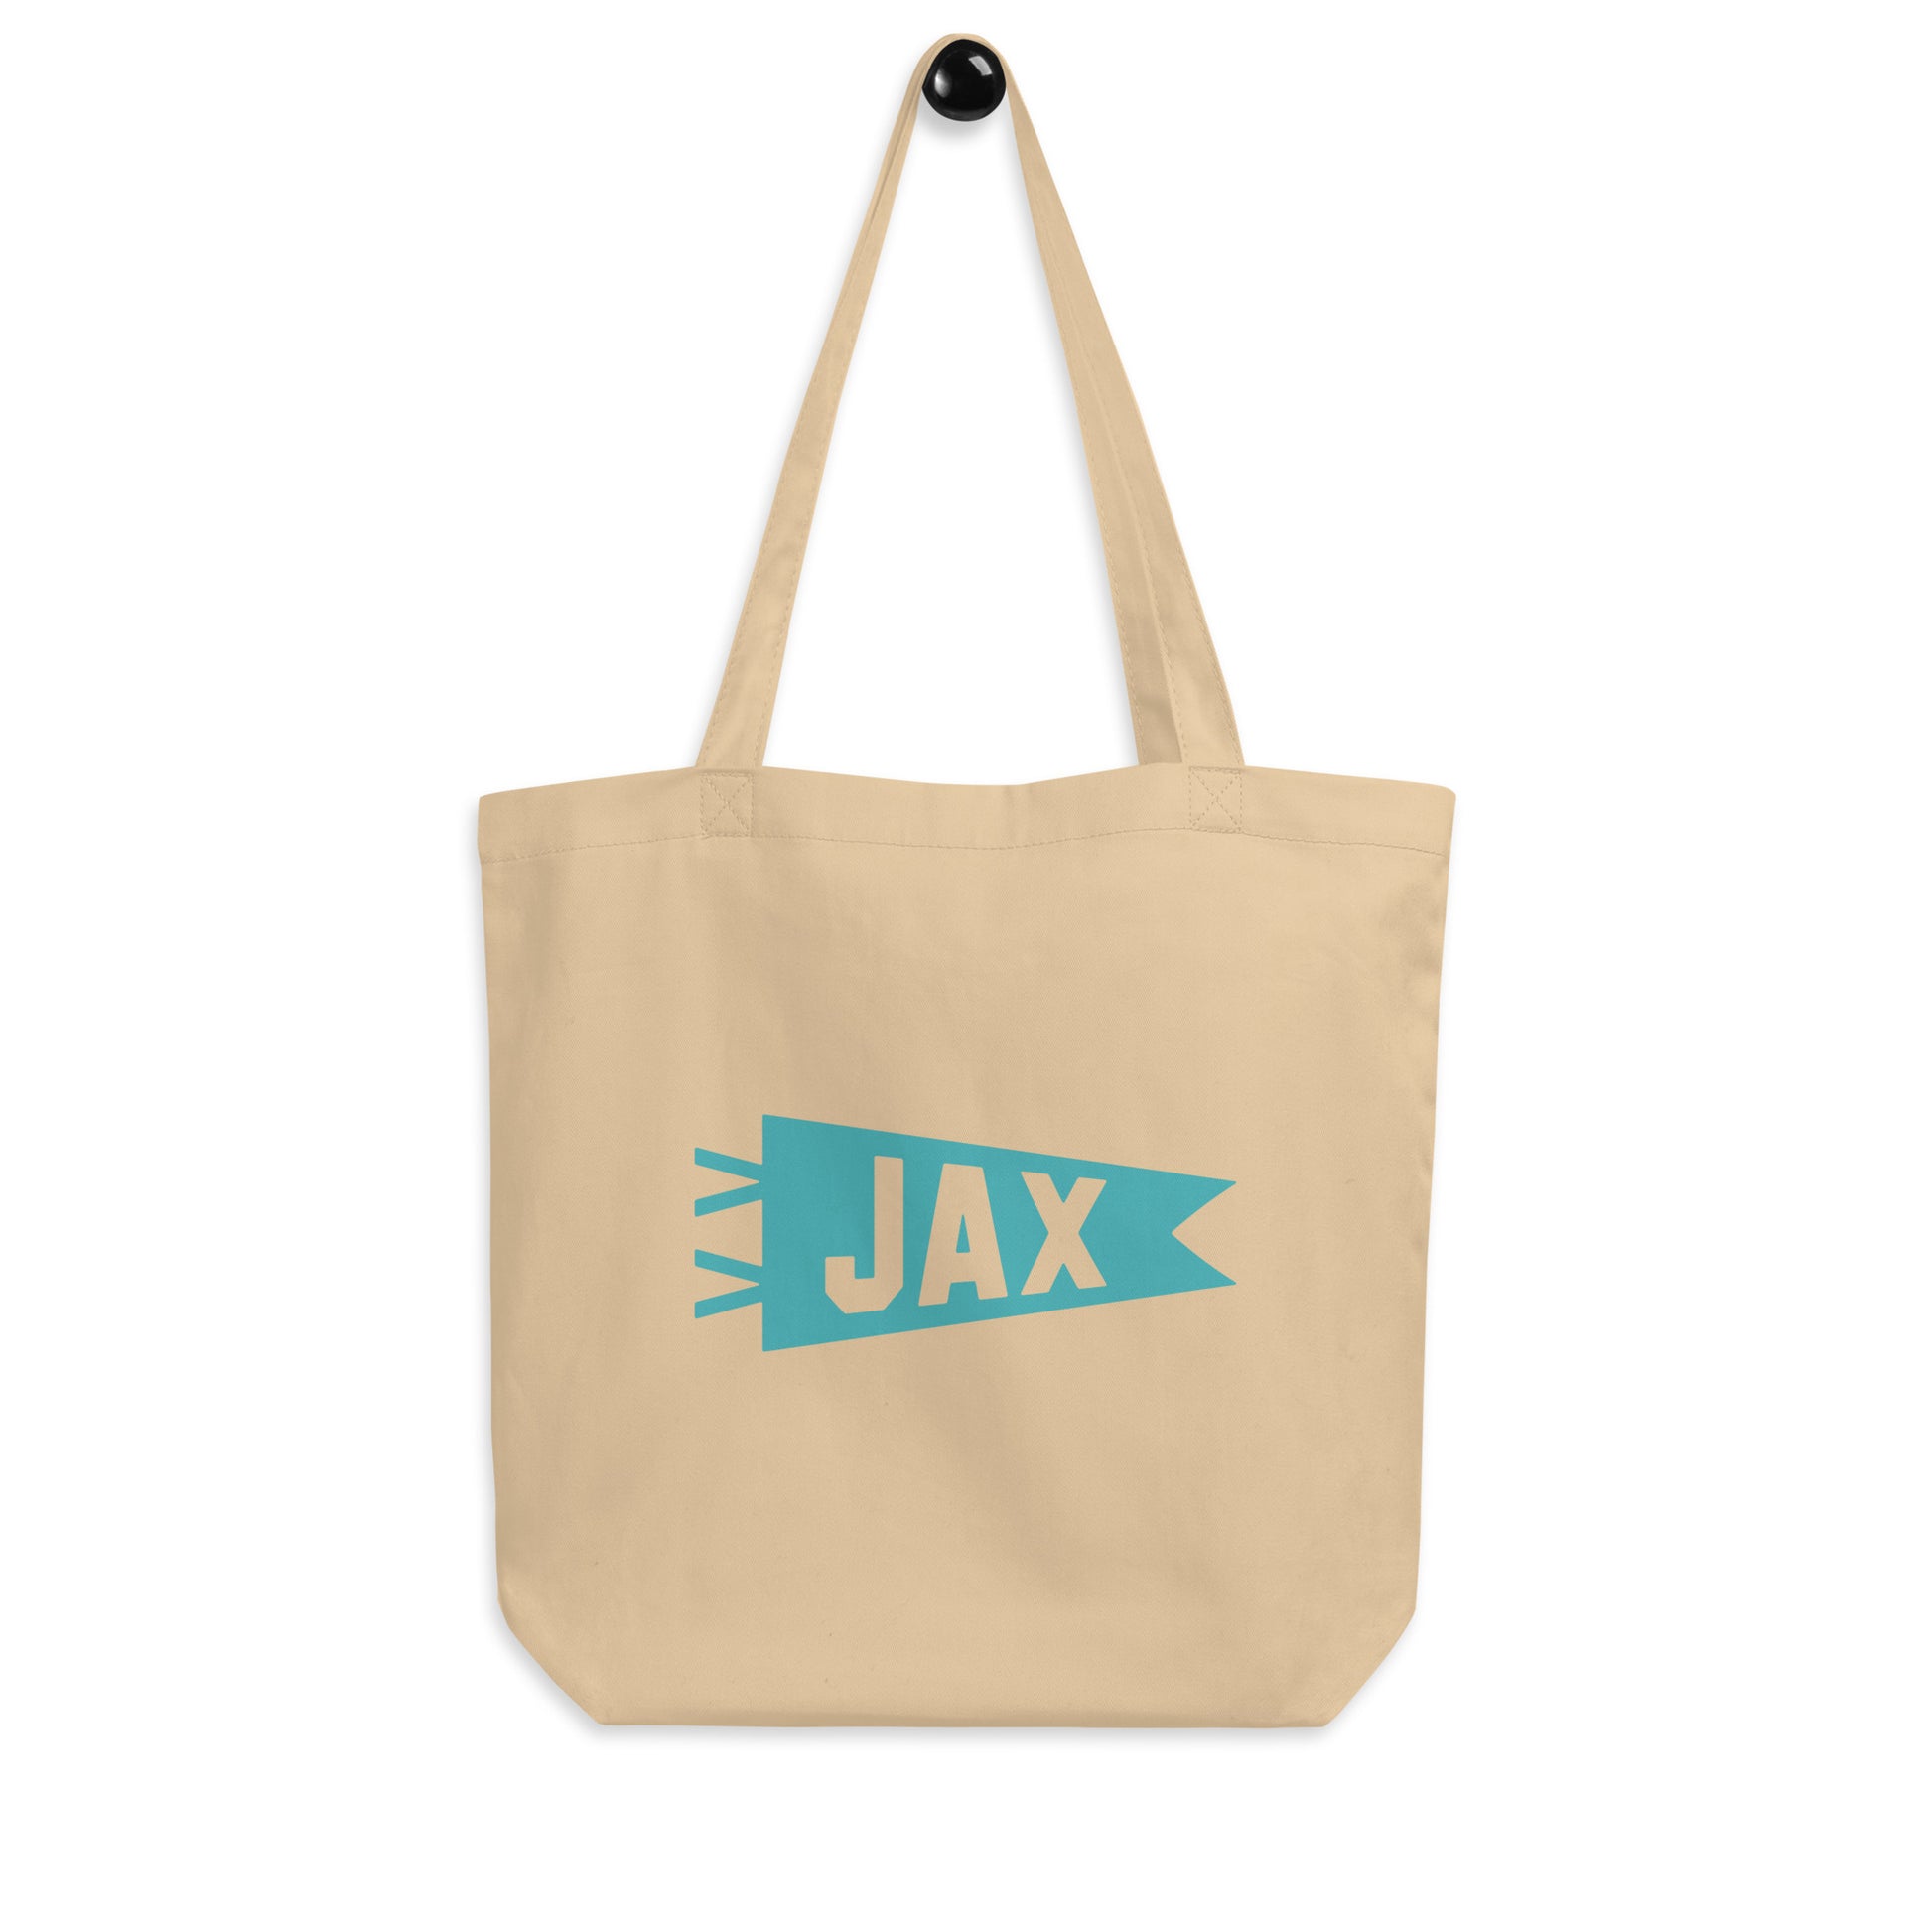 Cool Travel Gift Organic Tote Bag - Viking Blue • JAX Jacksonville • YHM Designs - Image 04